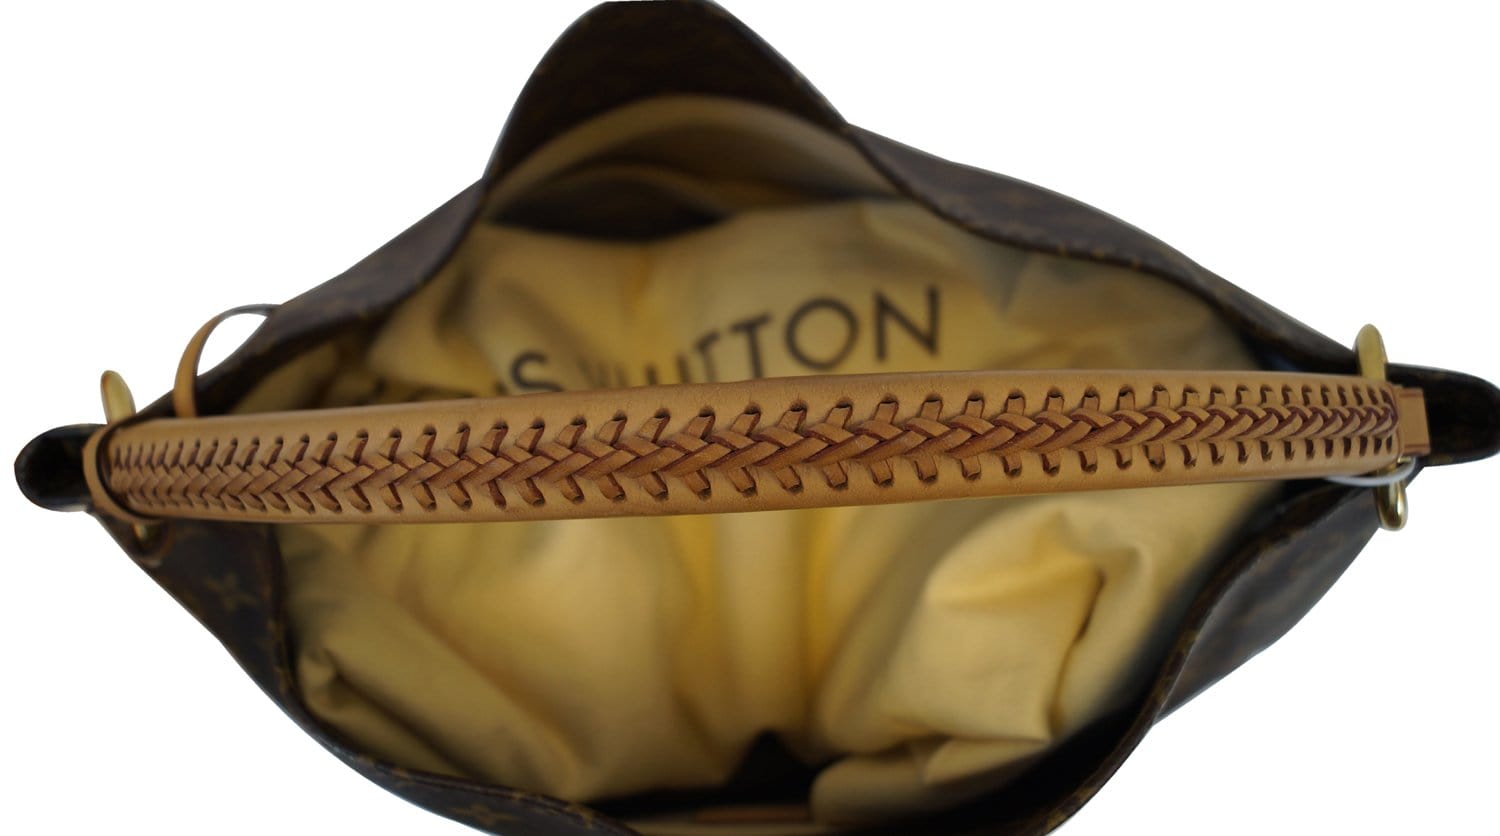 HealthdesignShops, Louis Vuitton Artsy Handbag 389820